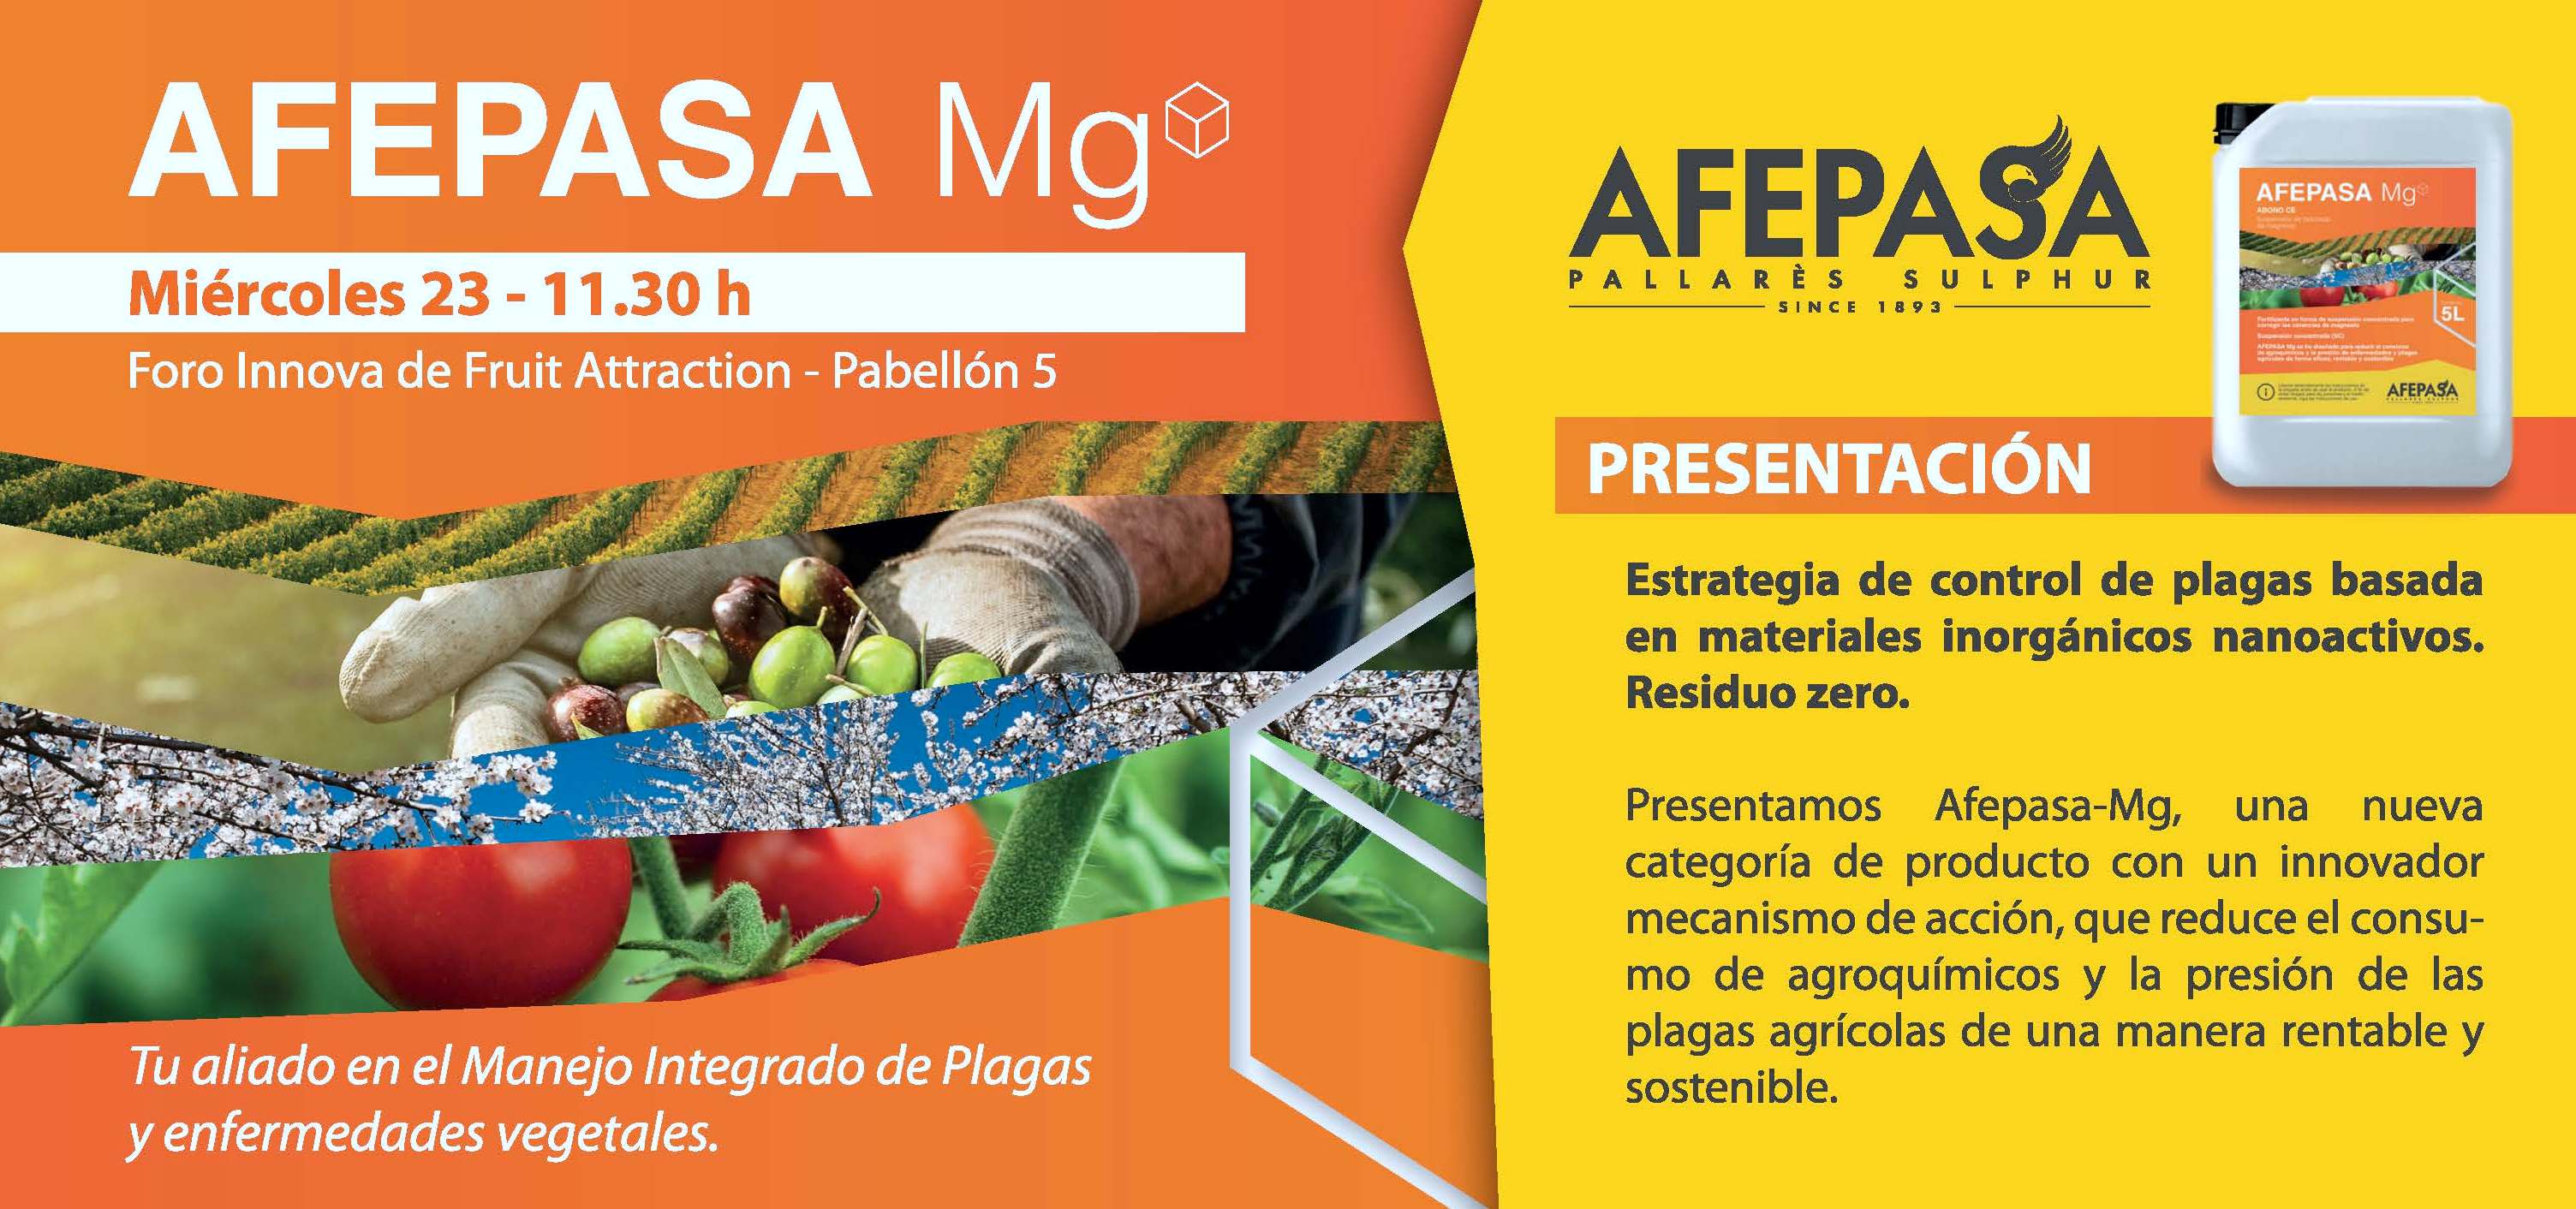 AFEPASA Mg será presentado en Fruit Attraction